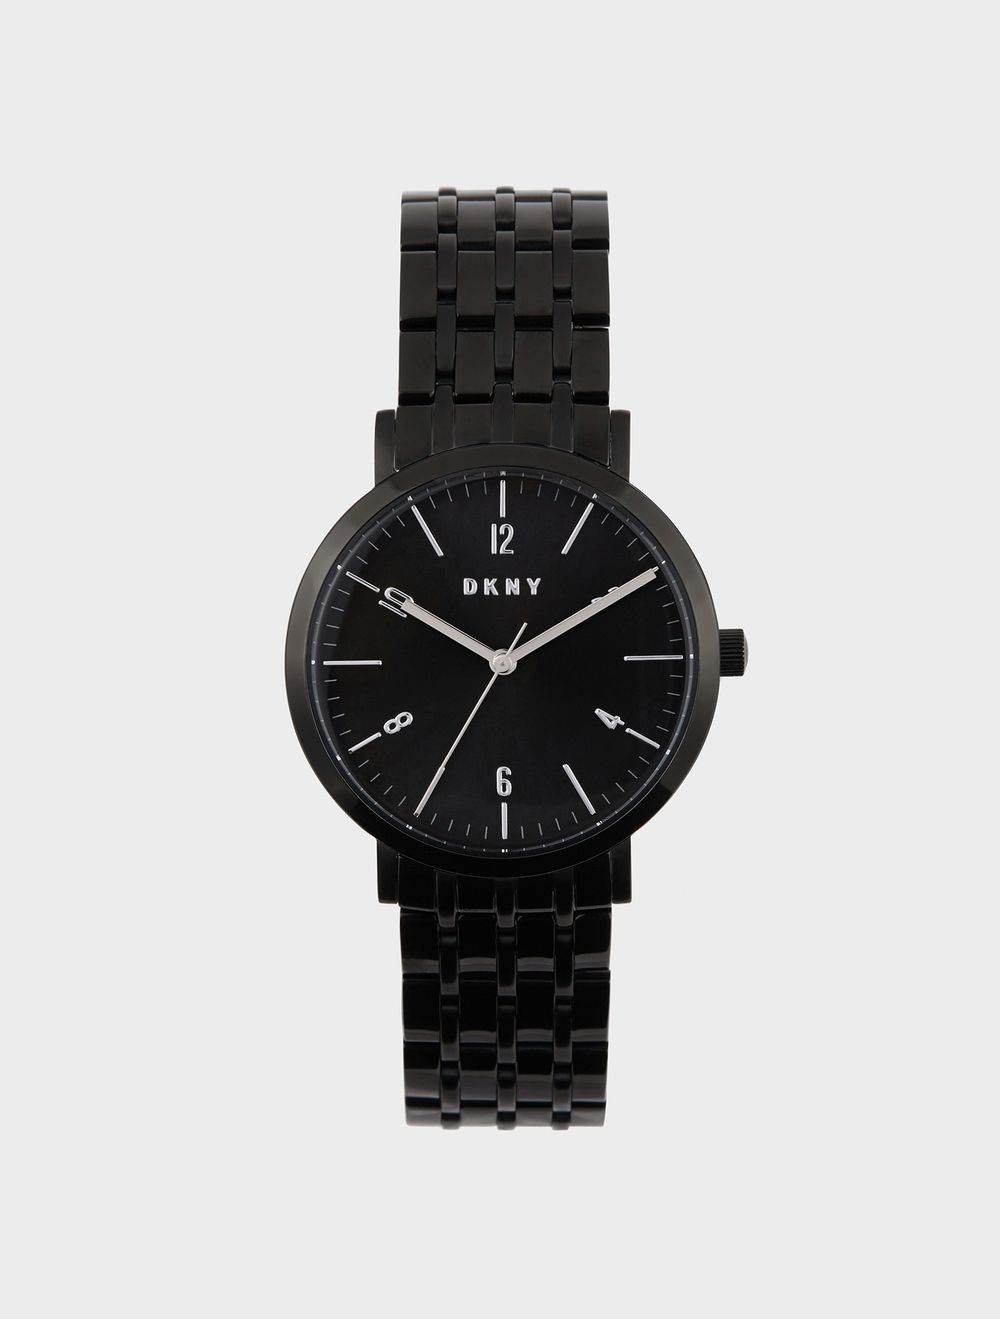 DKNY Minetta 36mm Black Stainless Steel Bracelet Watch | DKNY